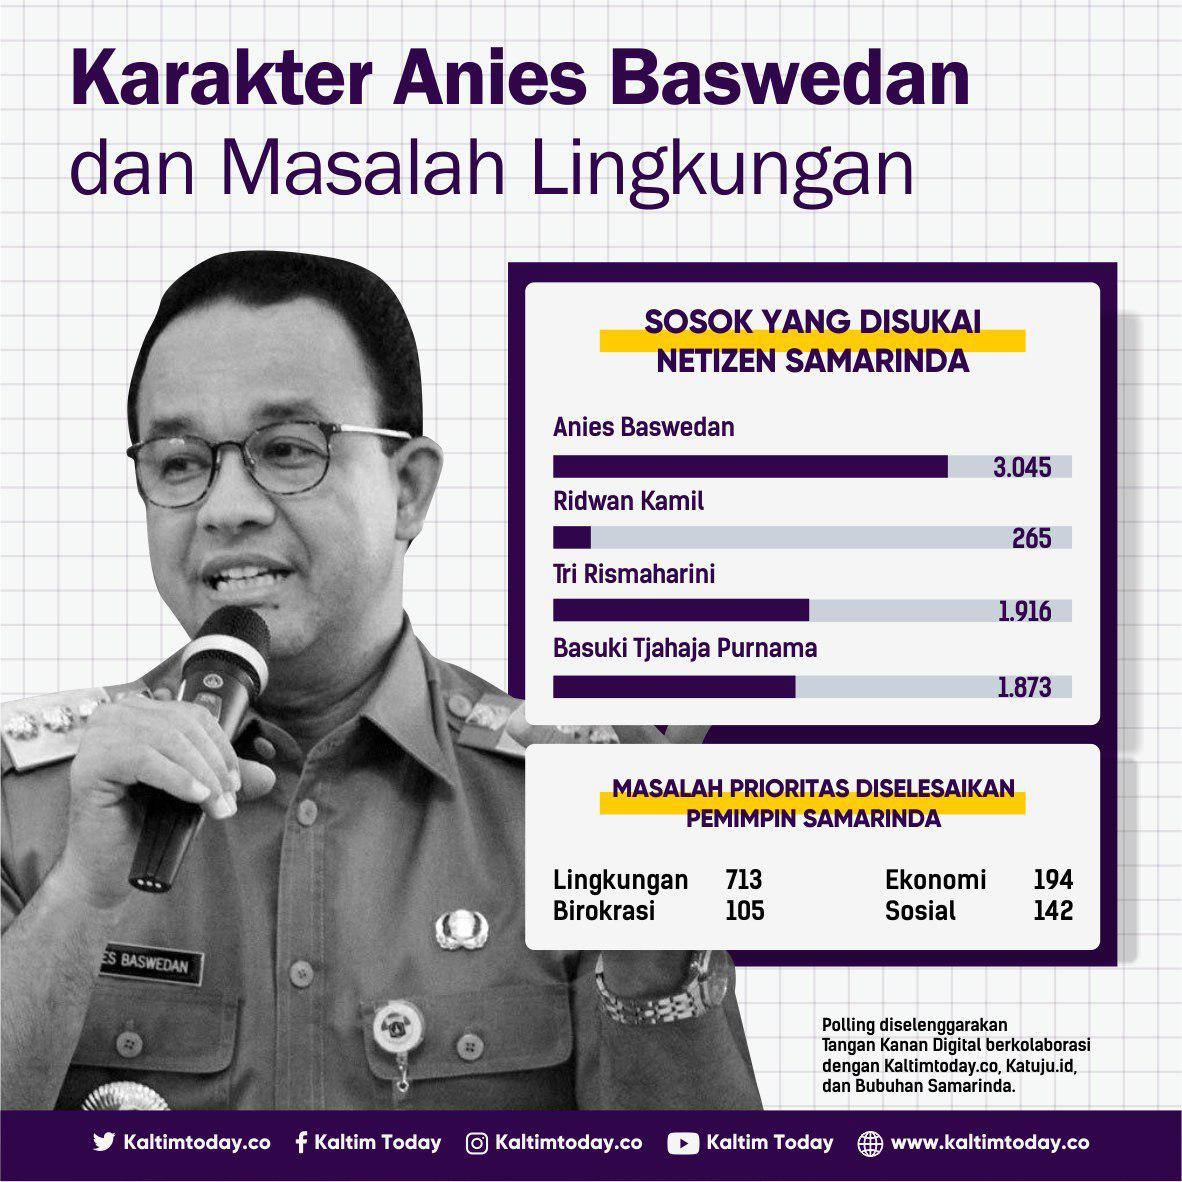 Hasil Polling: Karakter Anies Baswedan Disukai Netizen Samarinda